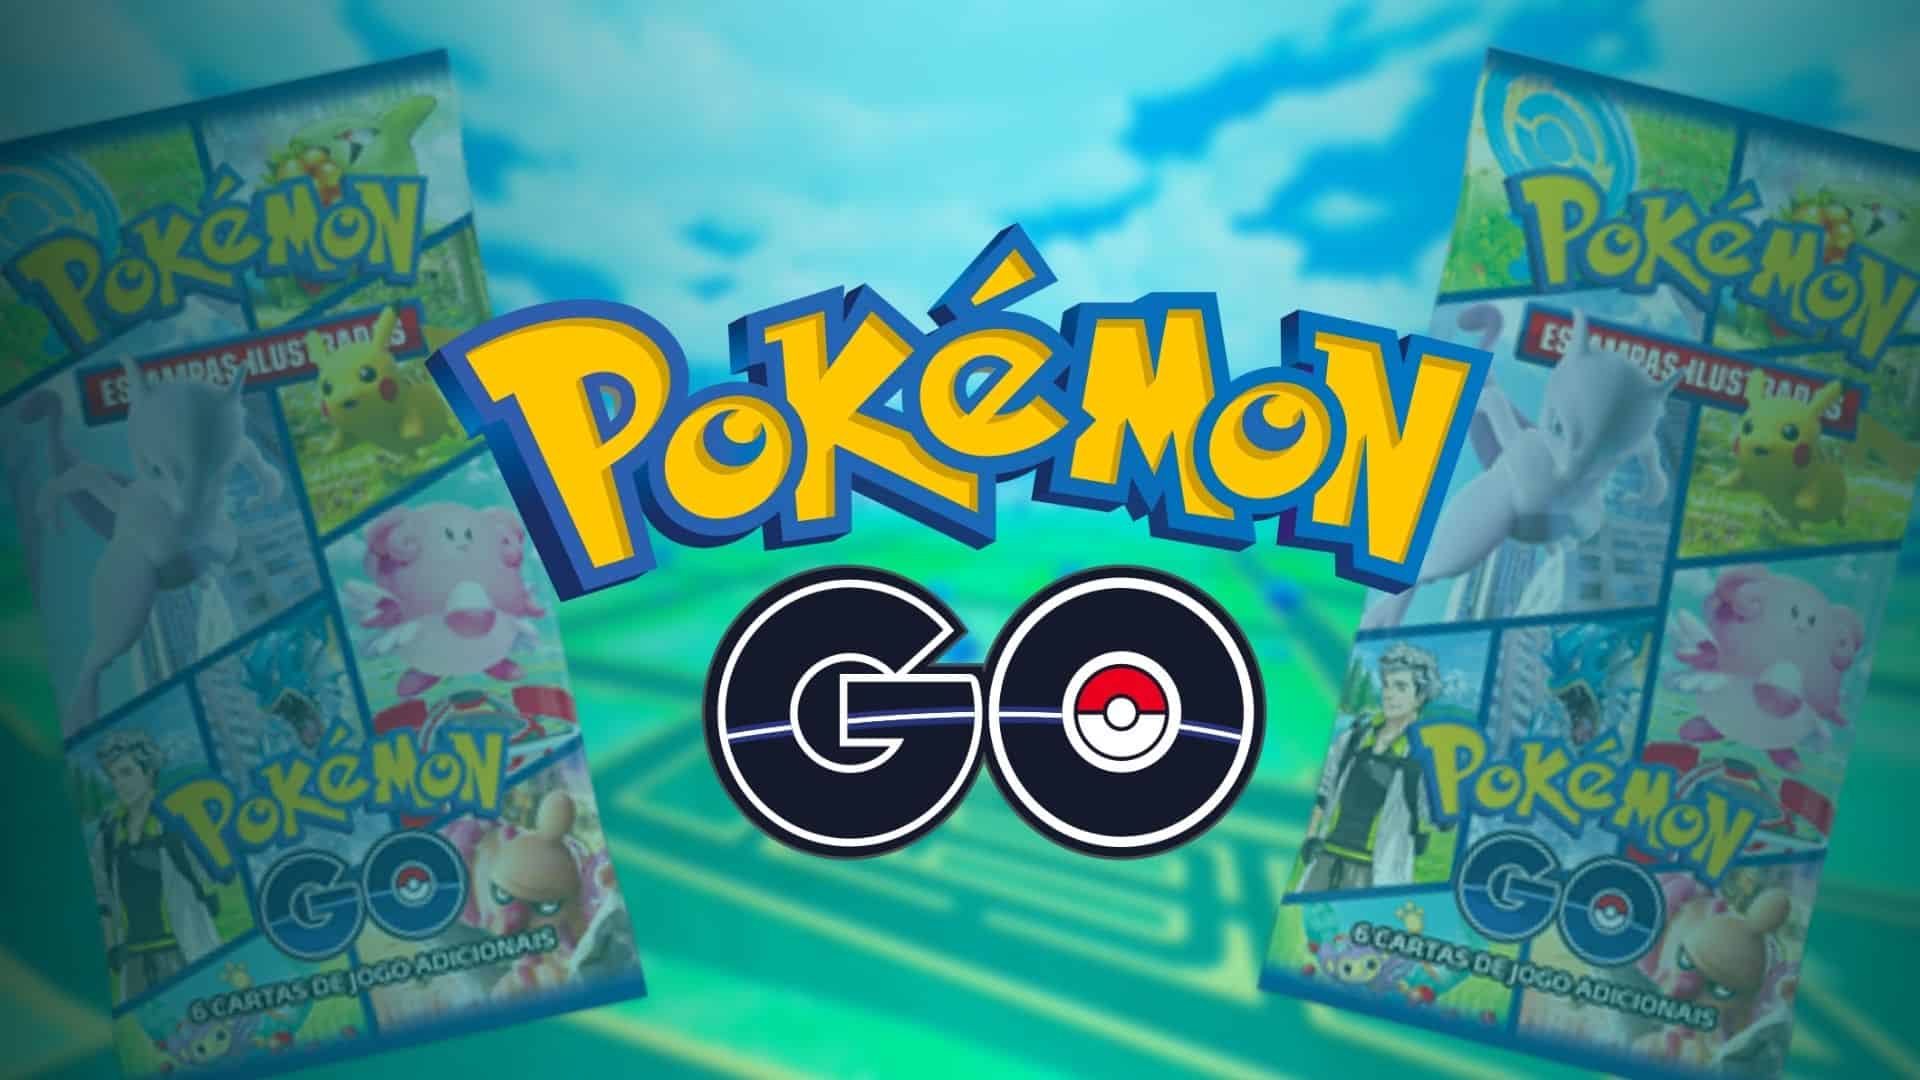 Pokémon GO finally comes to the Pokémon TCG, and we found a DITTO! #po